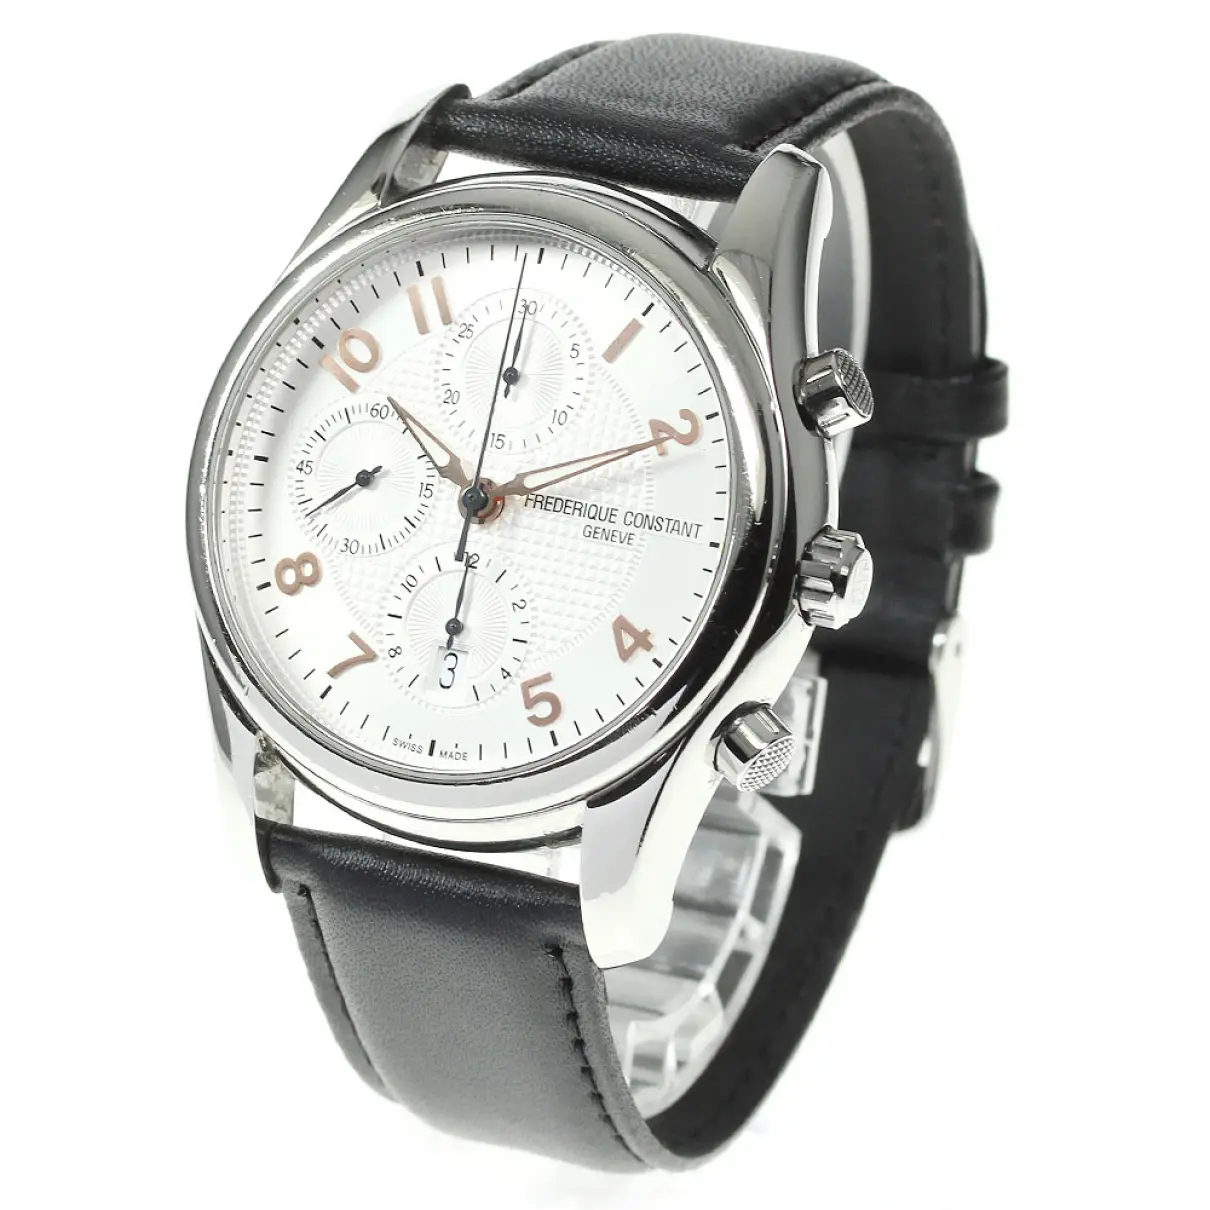 Buy Frederique Constant Watch online